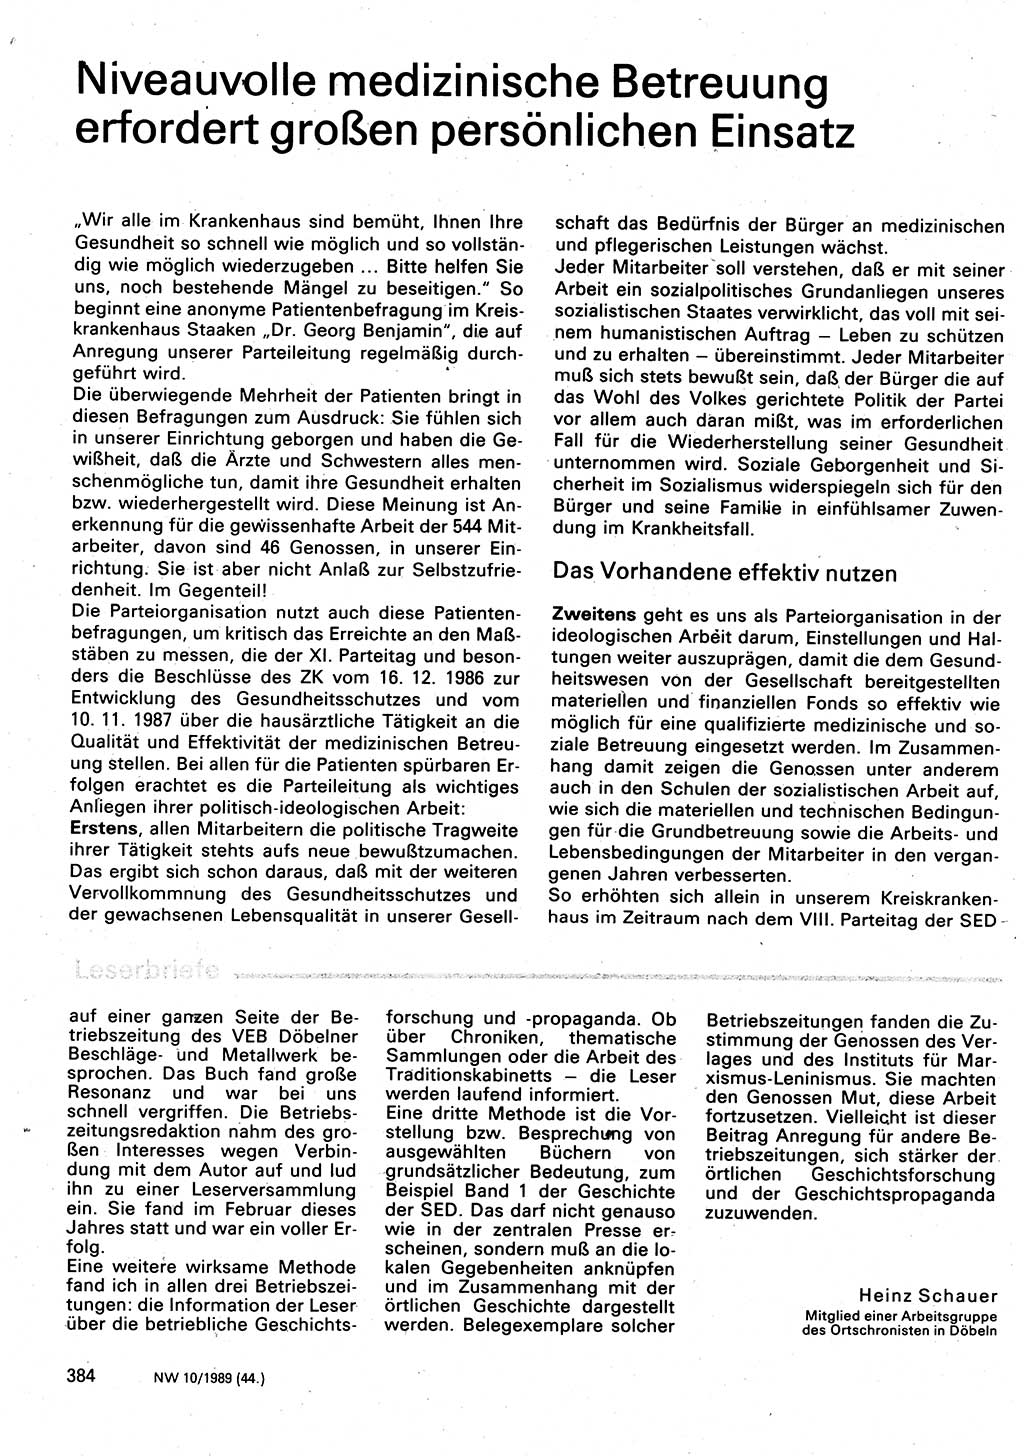 Neuer Weg (NW), Organ des Zentralkomitees (ZK) der SED (Sozialistische Einheitspartei Deutschlands) für Fragen des Parteilebens, 44. Jahrgang [Deutsche Demokratische Republik (DDR)] 1989, Seite 384 (NW ZK SED DDR 1989, S. 384)